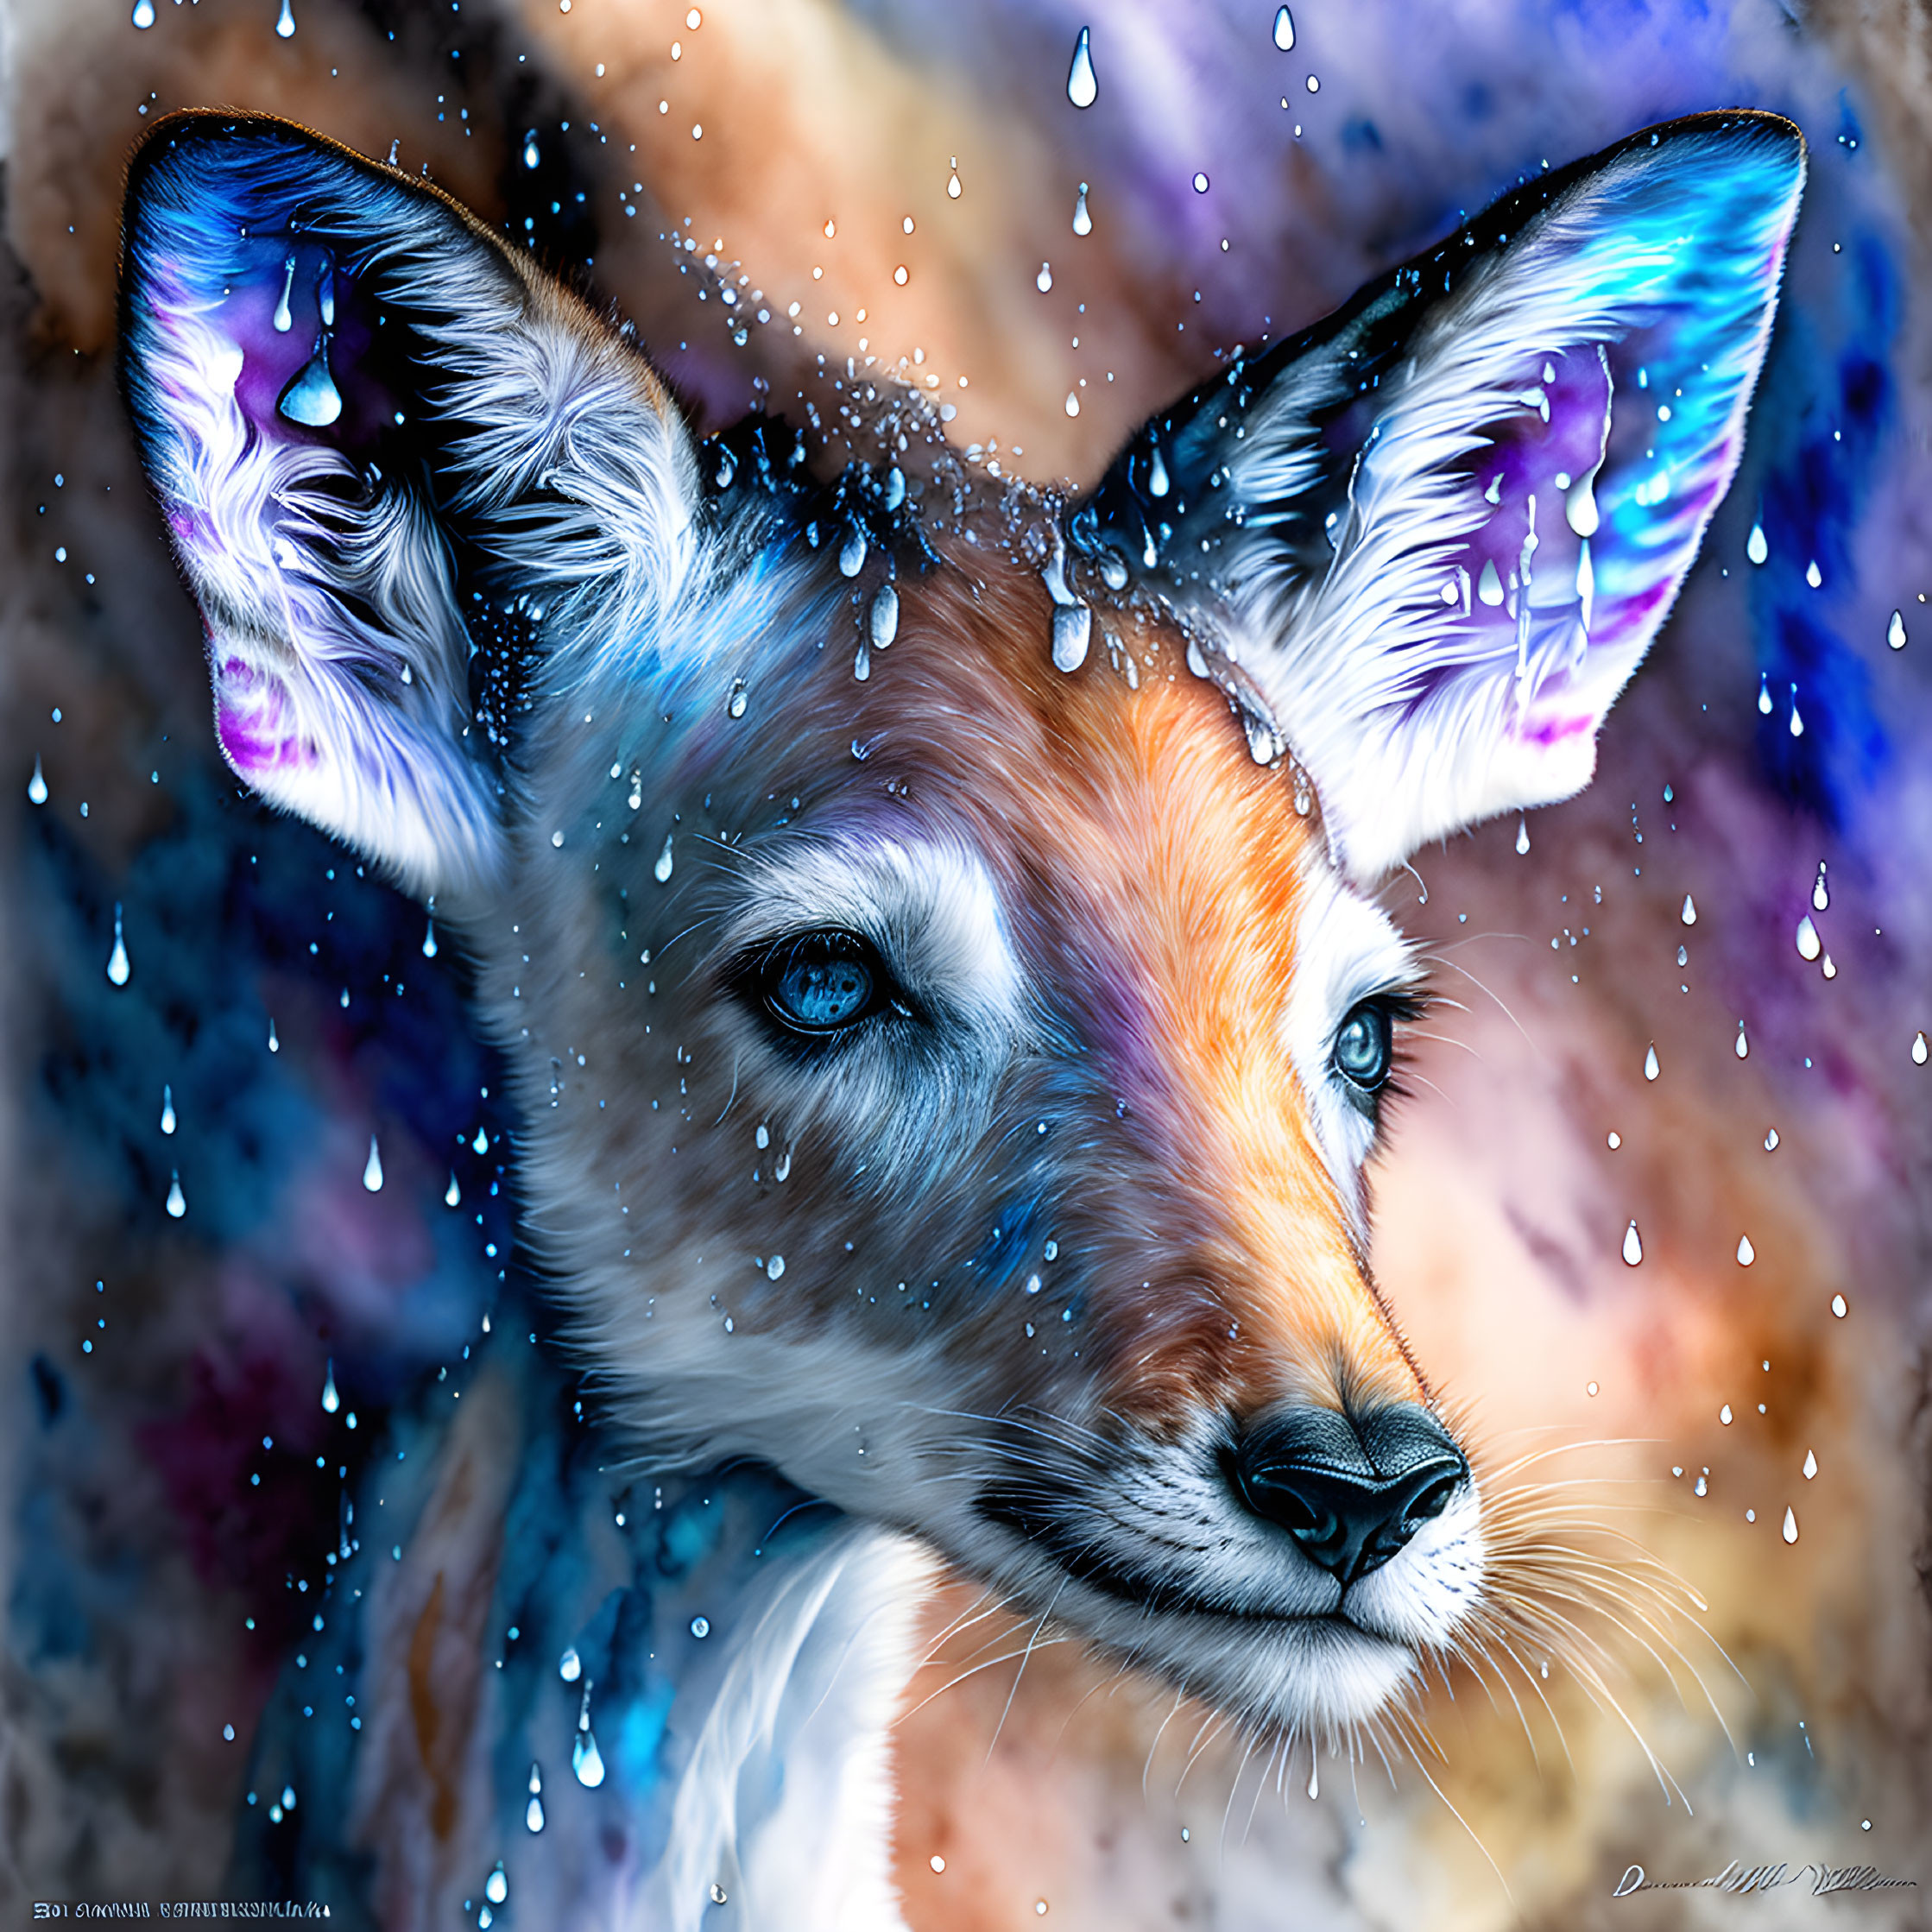 Enchanted Deer: Watercolor Fantasy Art